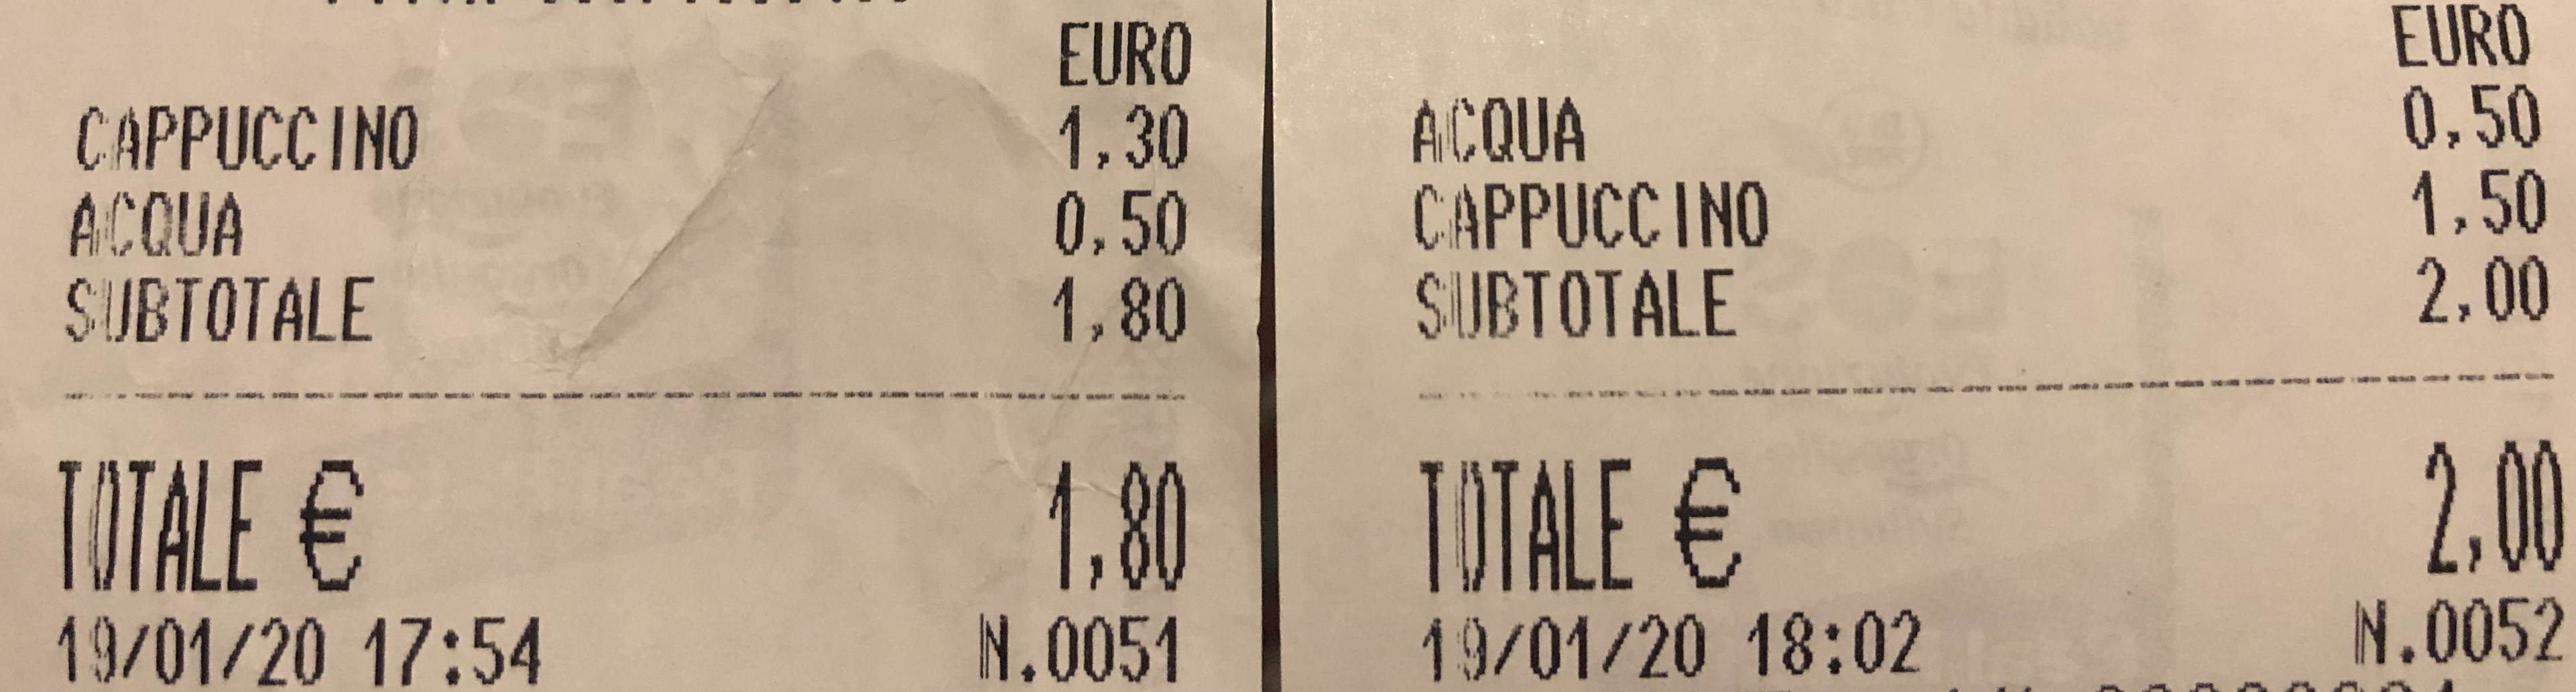 Italian Receipt